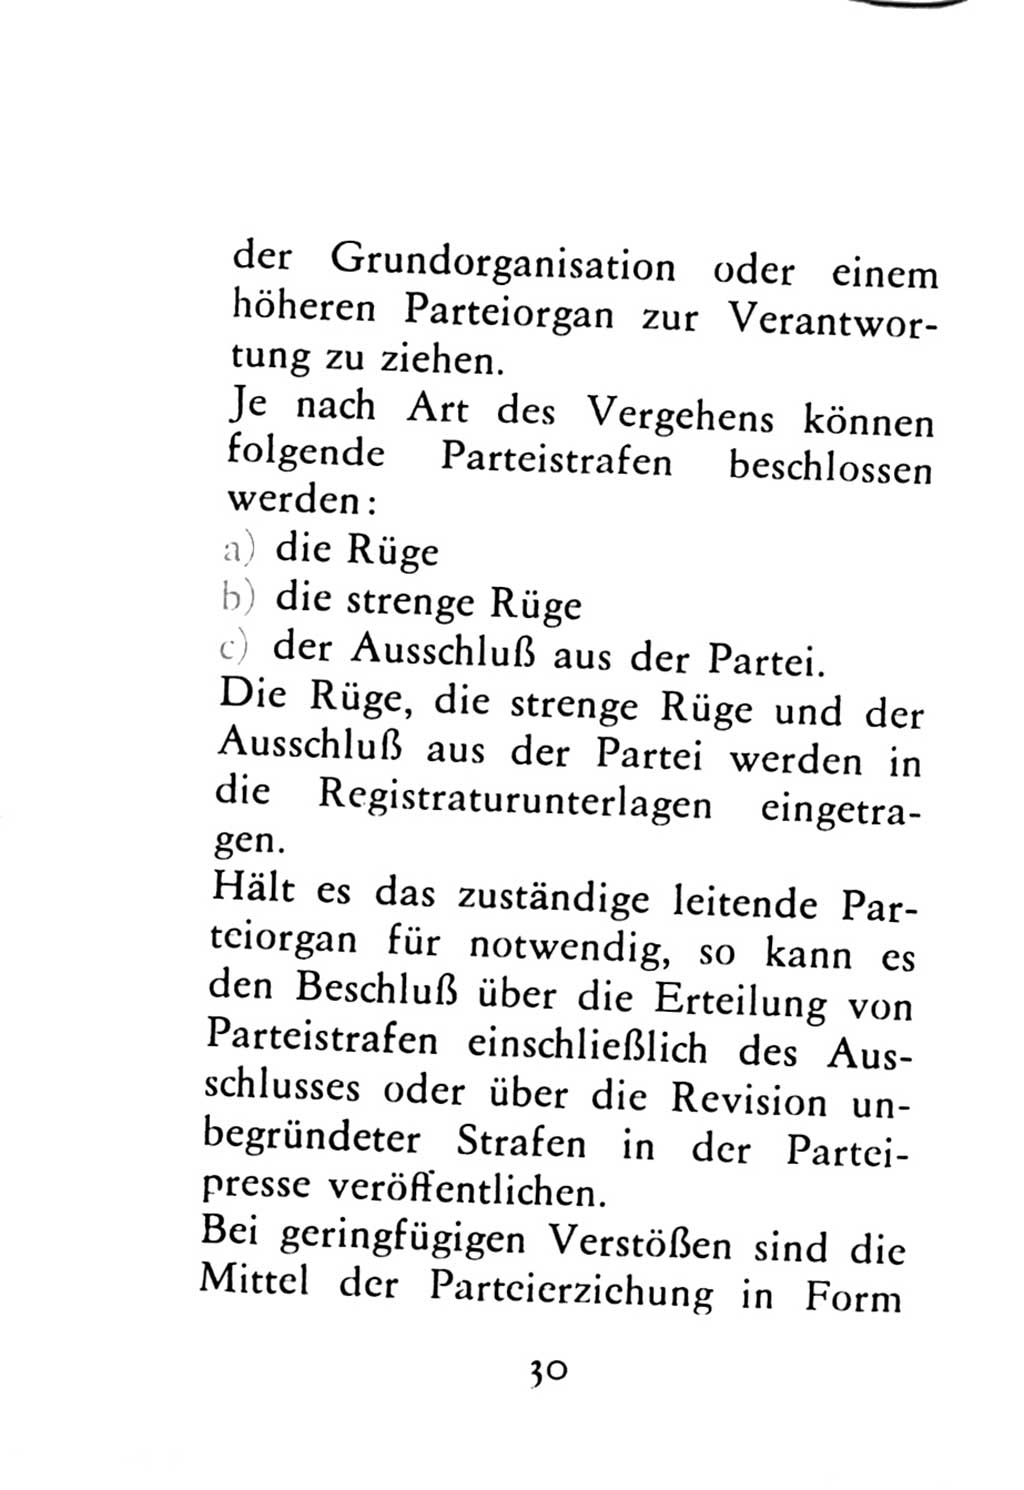 Statut der Sozialistischen Einheitspartei Deutschlands (SED) 1976, Seite 30 (St. SED DDR 1976, S. 30)